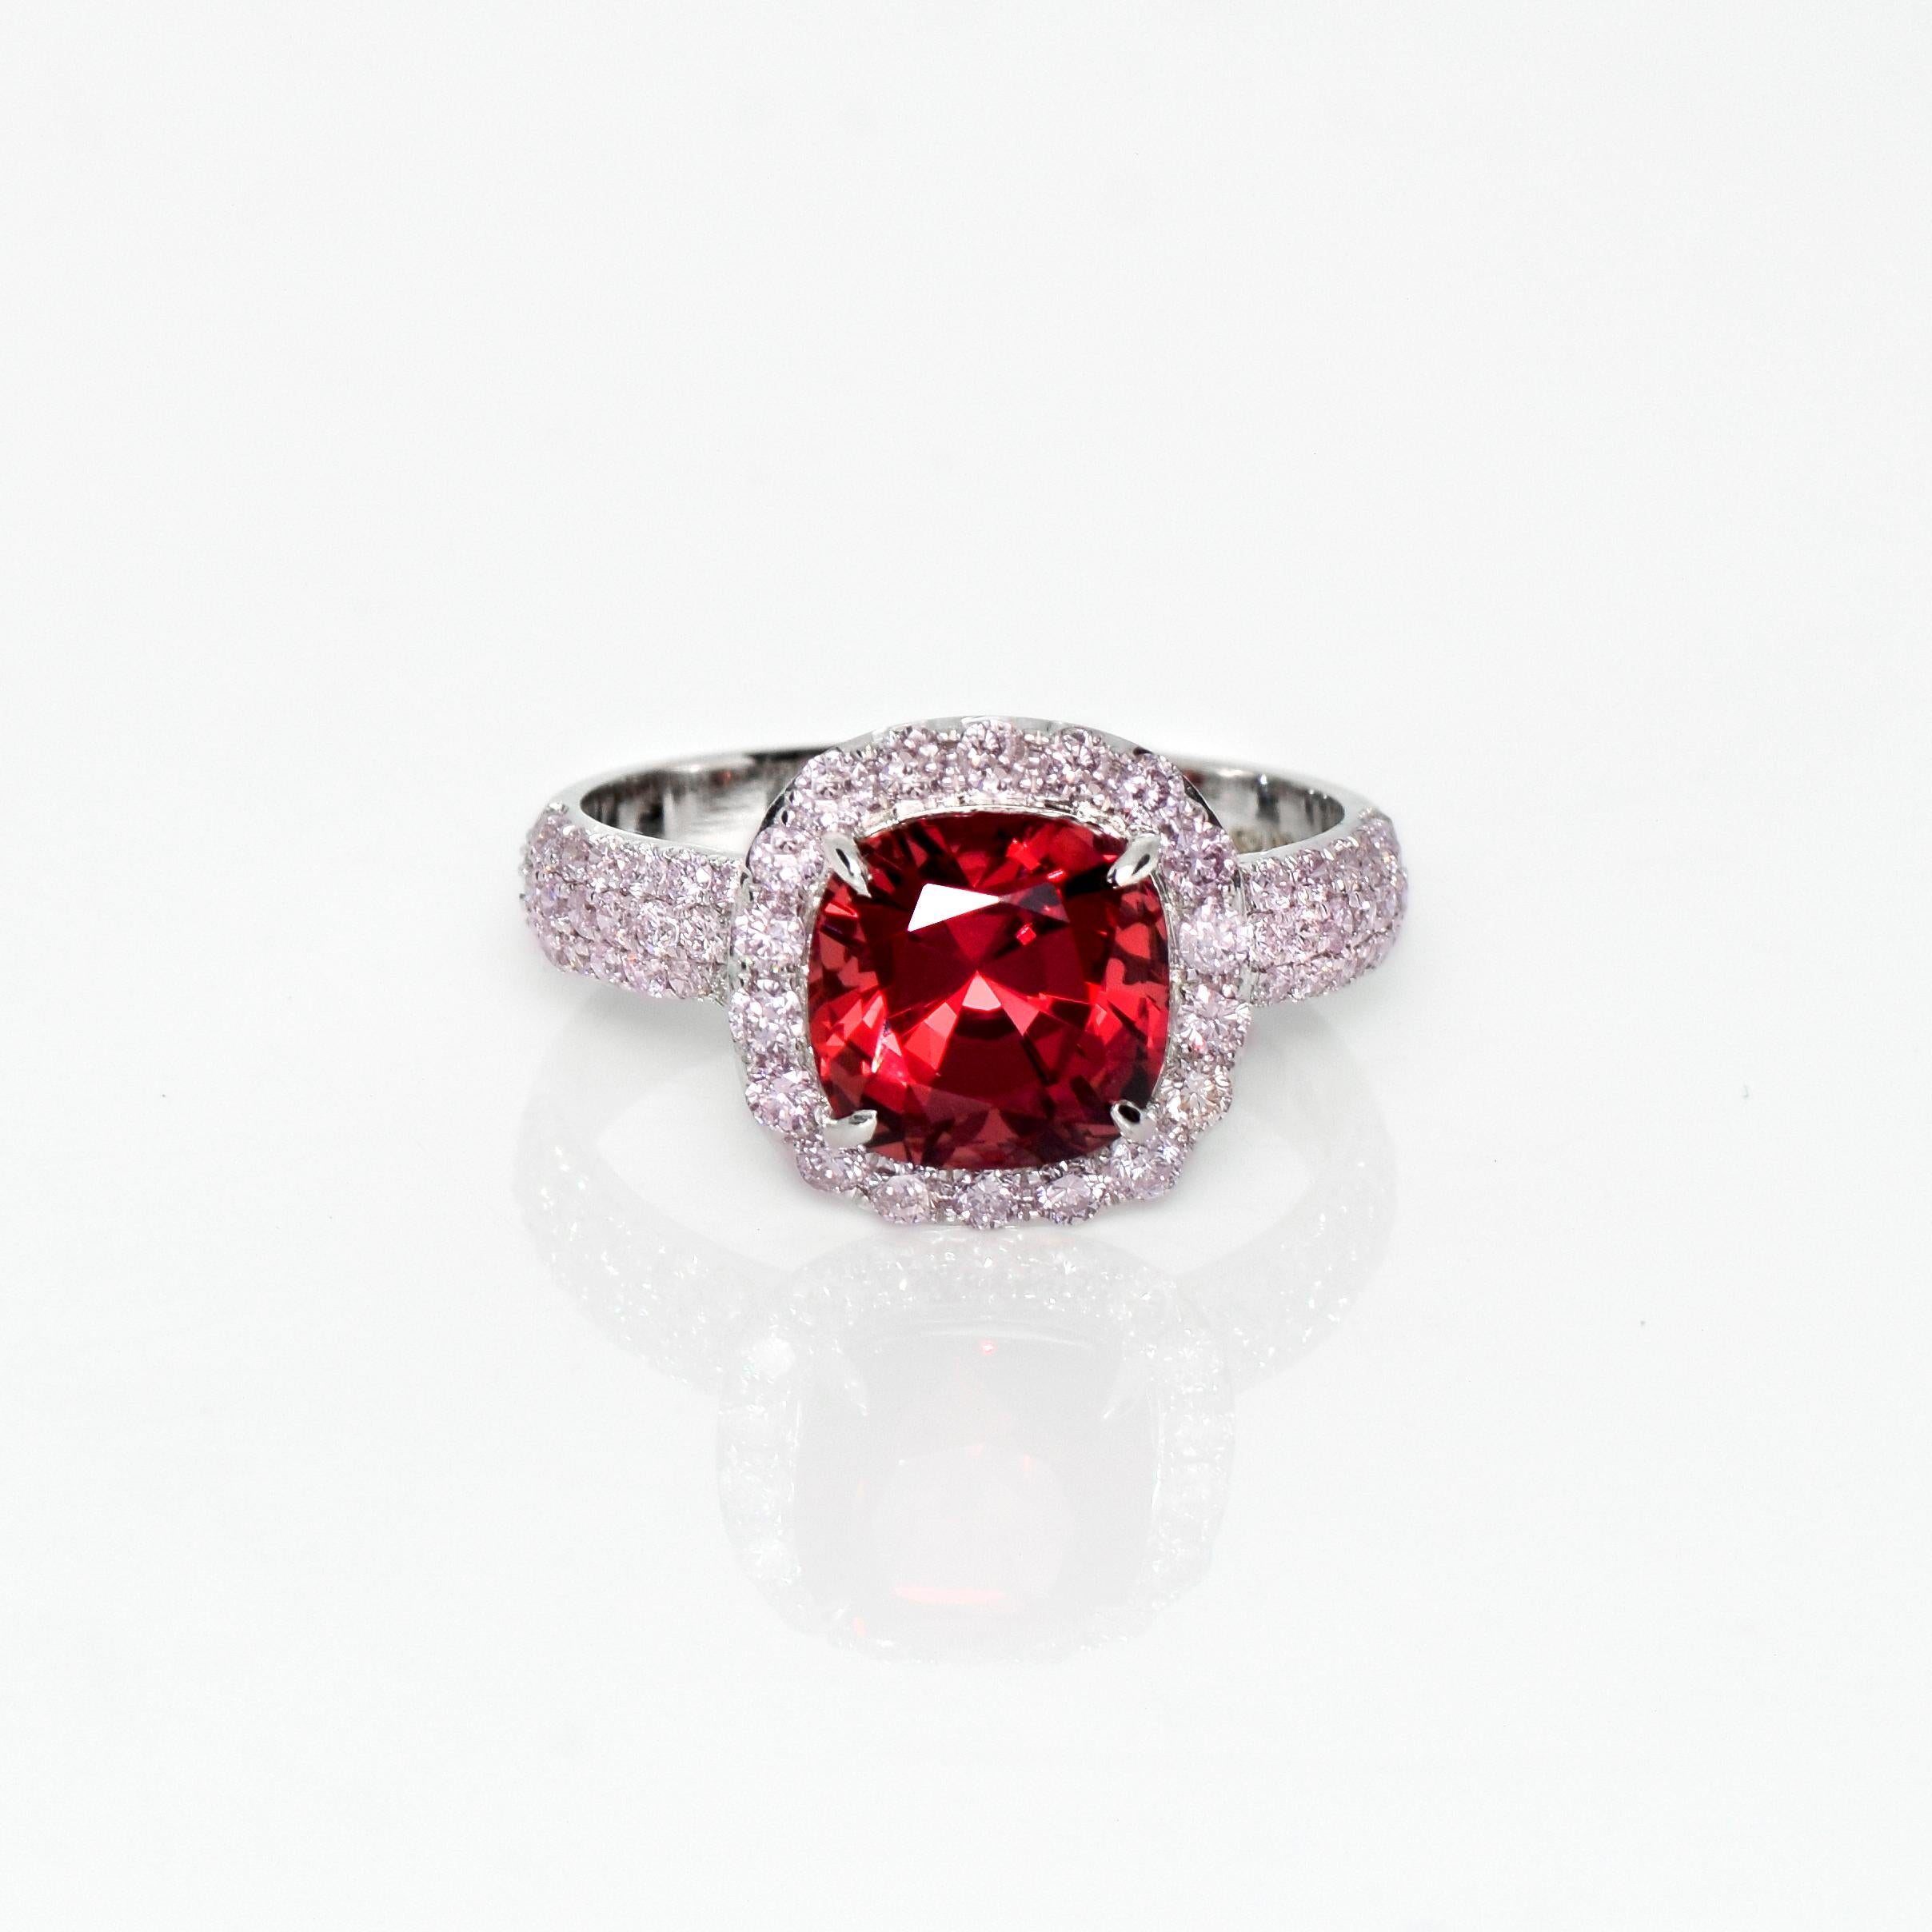 *IGI 18K 3.09 Ct Red Spinel&Pink Diamonds Antique Engagement Ring* (Bague de fiançailles ancienne)

Certifié IGI, un spinelle de forme coussin pesant 3.09 ct est serti sur un anneau en or blanc 18K avec des diamants roses naturels pesant 0.87 ct. 